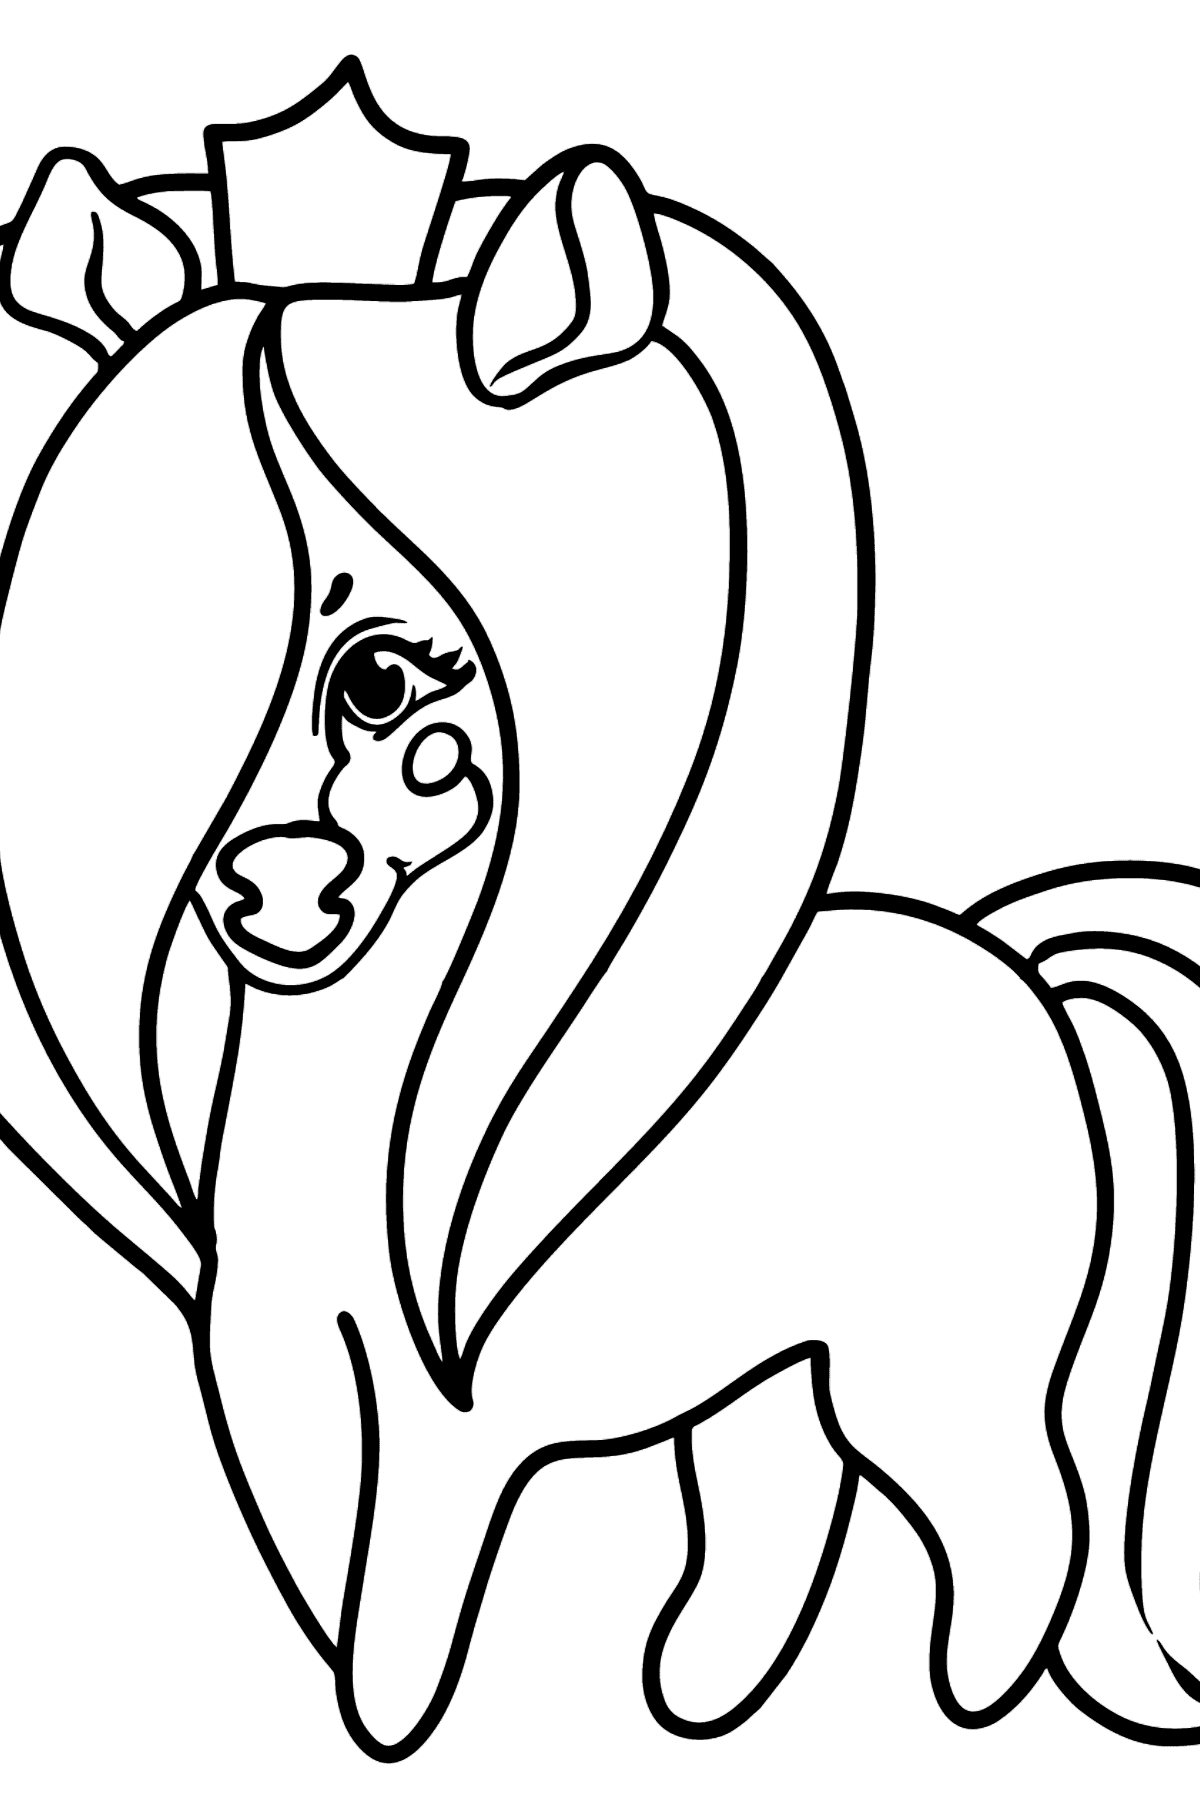 Disegno di Principessa pony da colorare - Disegni da colorare per bambini